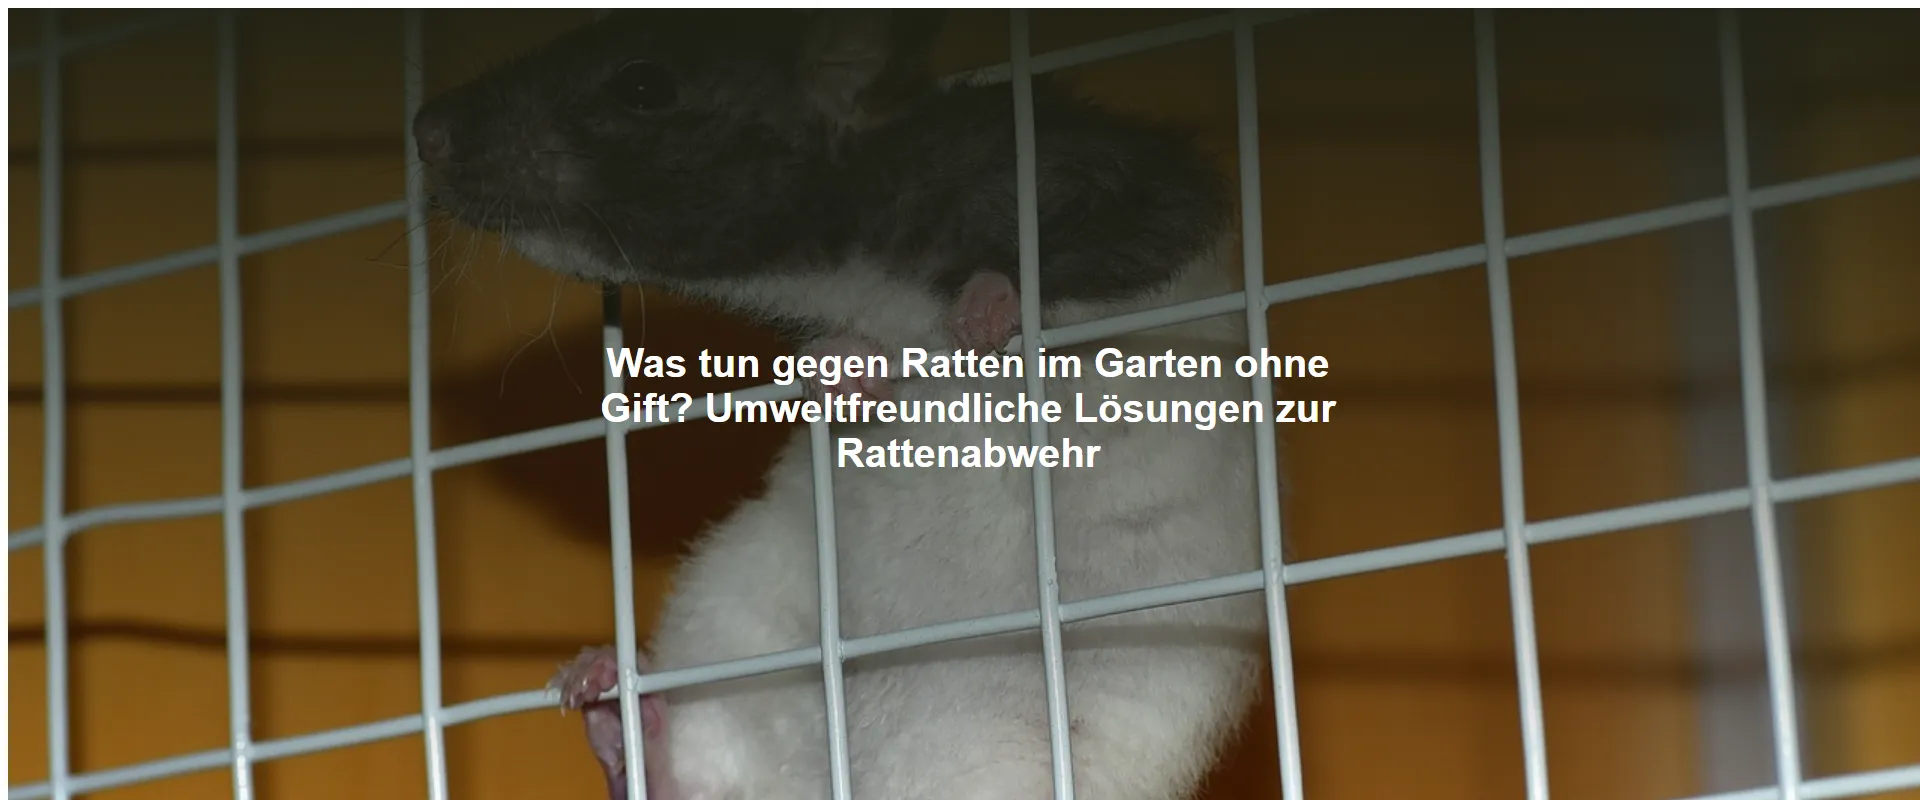 Was tun gegen Ratten im Garten ohne Gift? Umweltfreundliche Lösungen zur Rattenabwehr